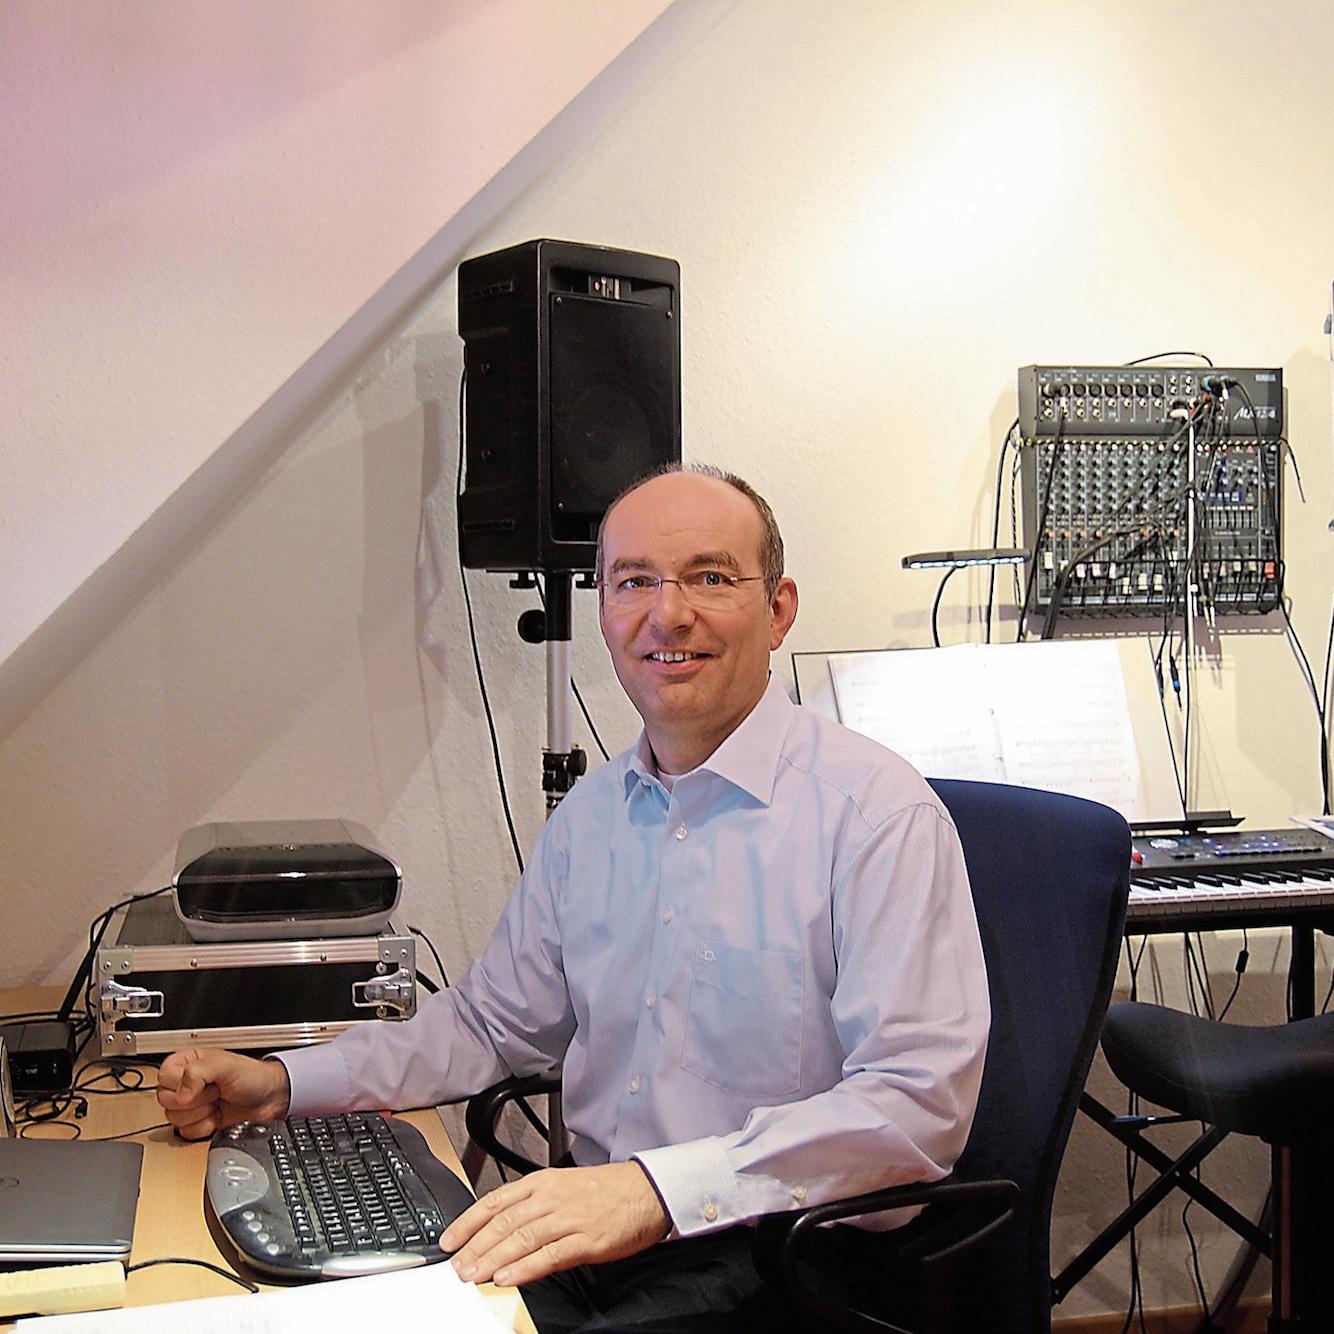 Wolfgang Biel ist nicht nur Physiker, sondern auch Komponist „neuer geistlicher“ Lieder, die in seinem Heim-Studio entstehen.